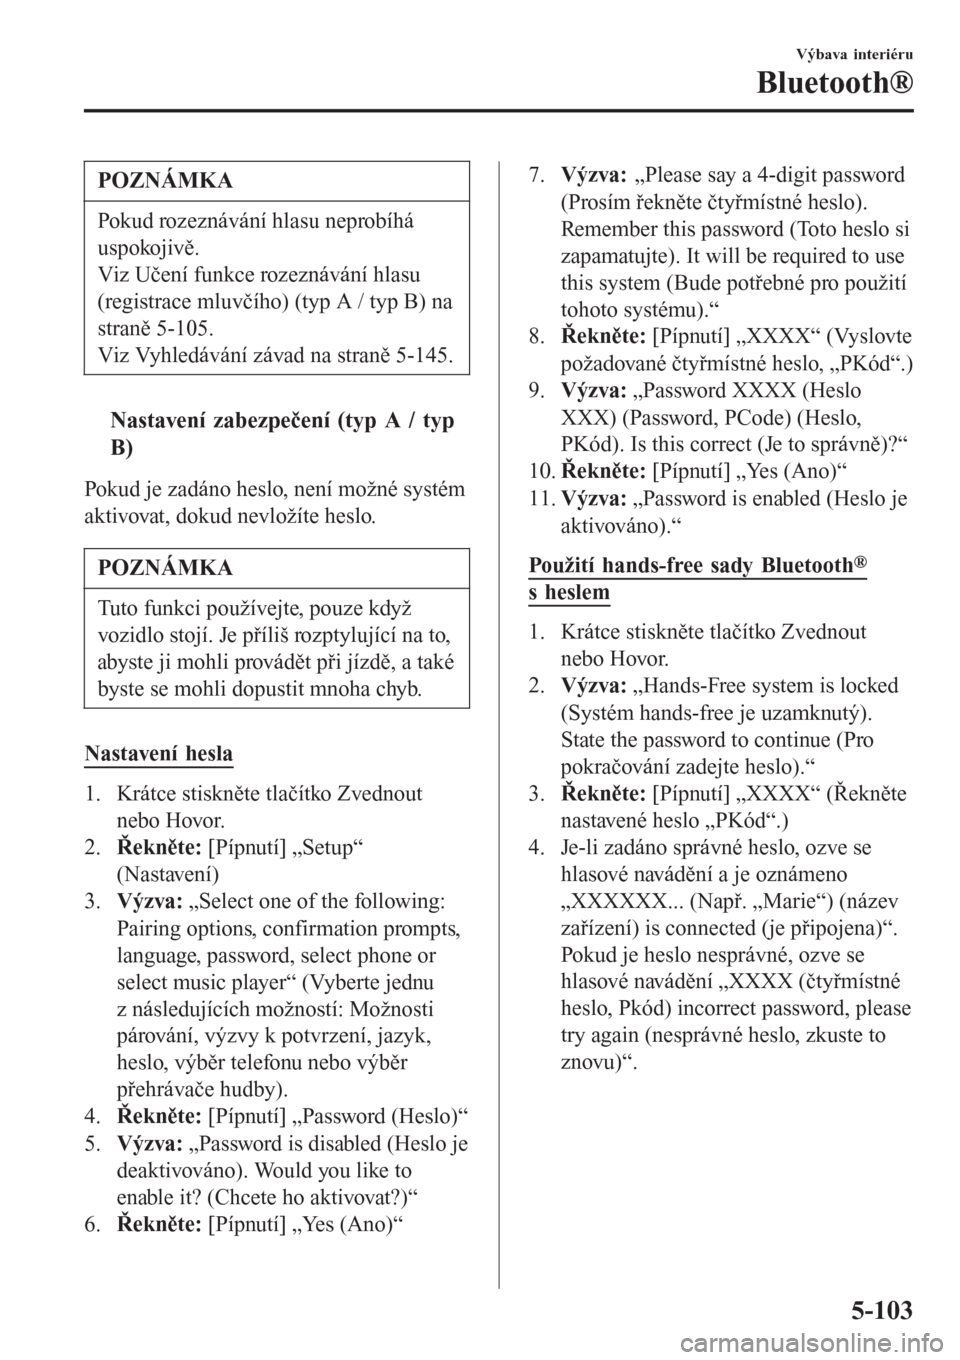 MAZDA MODEL CX-3 2015  Návod k obsluze (in Czech) POZNÁMKA
Pokud rozeznávání hlasu neprobíhá
uspokojivě.
Viz Učení funkce rozeznávání hlasu
(registrace mluvčího) (typ A / typ B) na
straně 5-105.
Viz Vyhledávání závad na straně 5-1